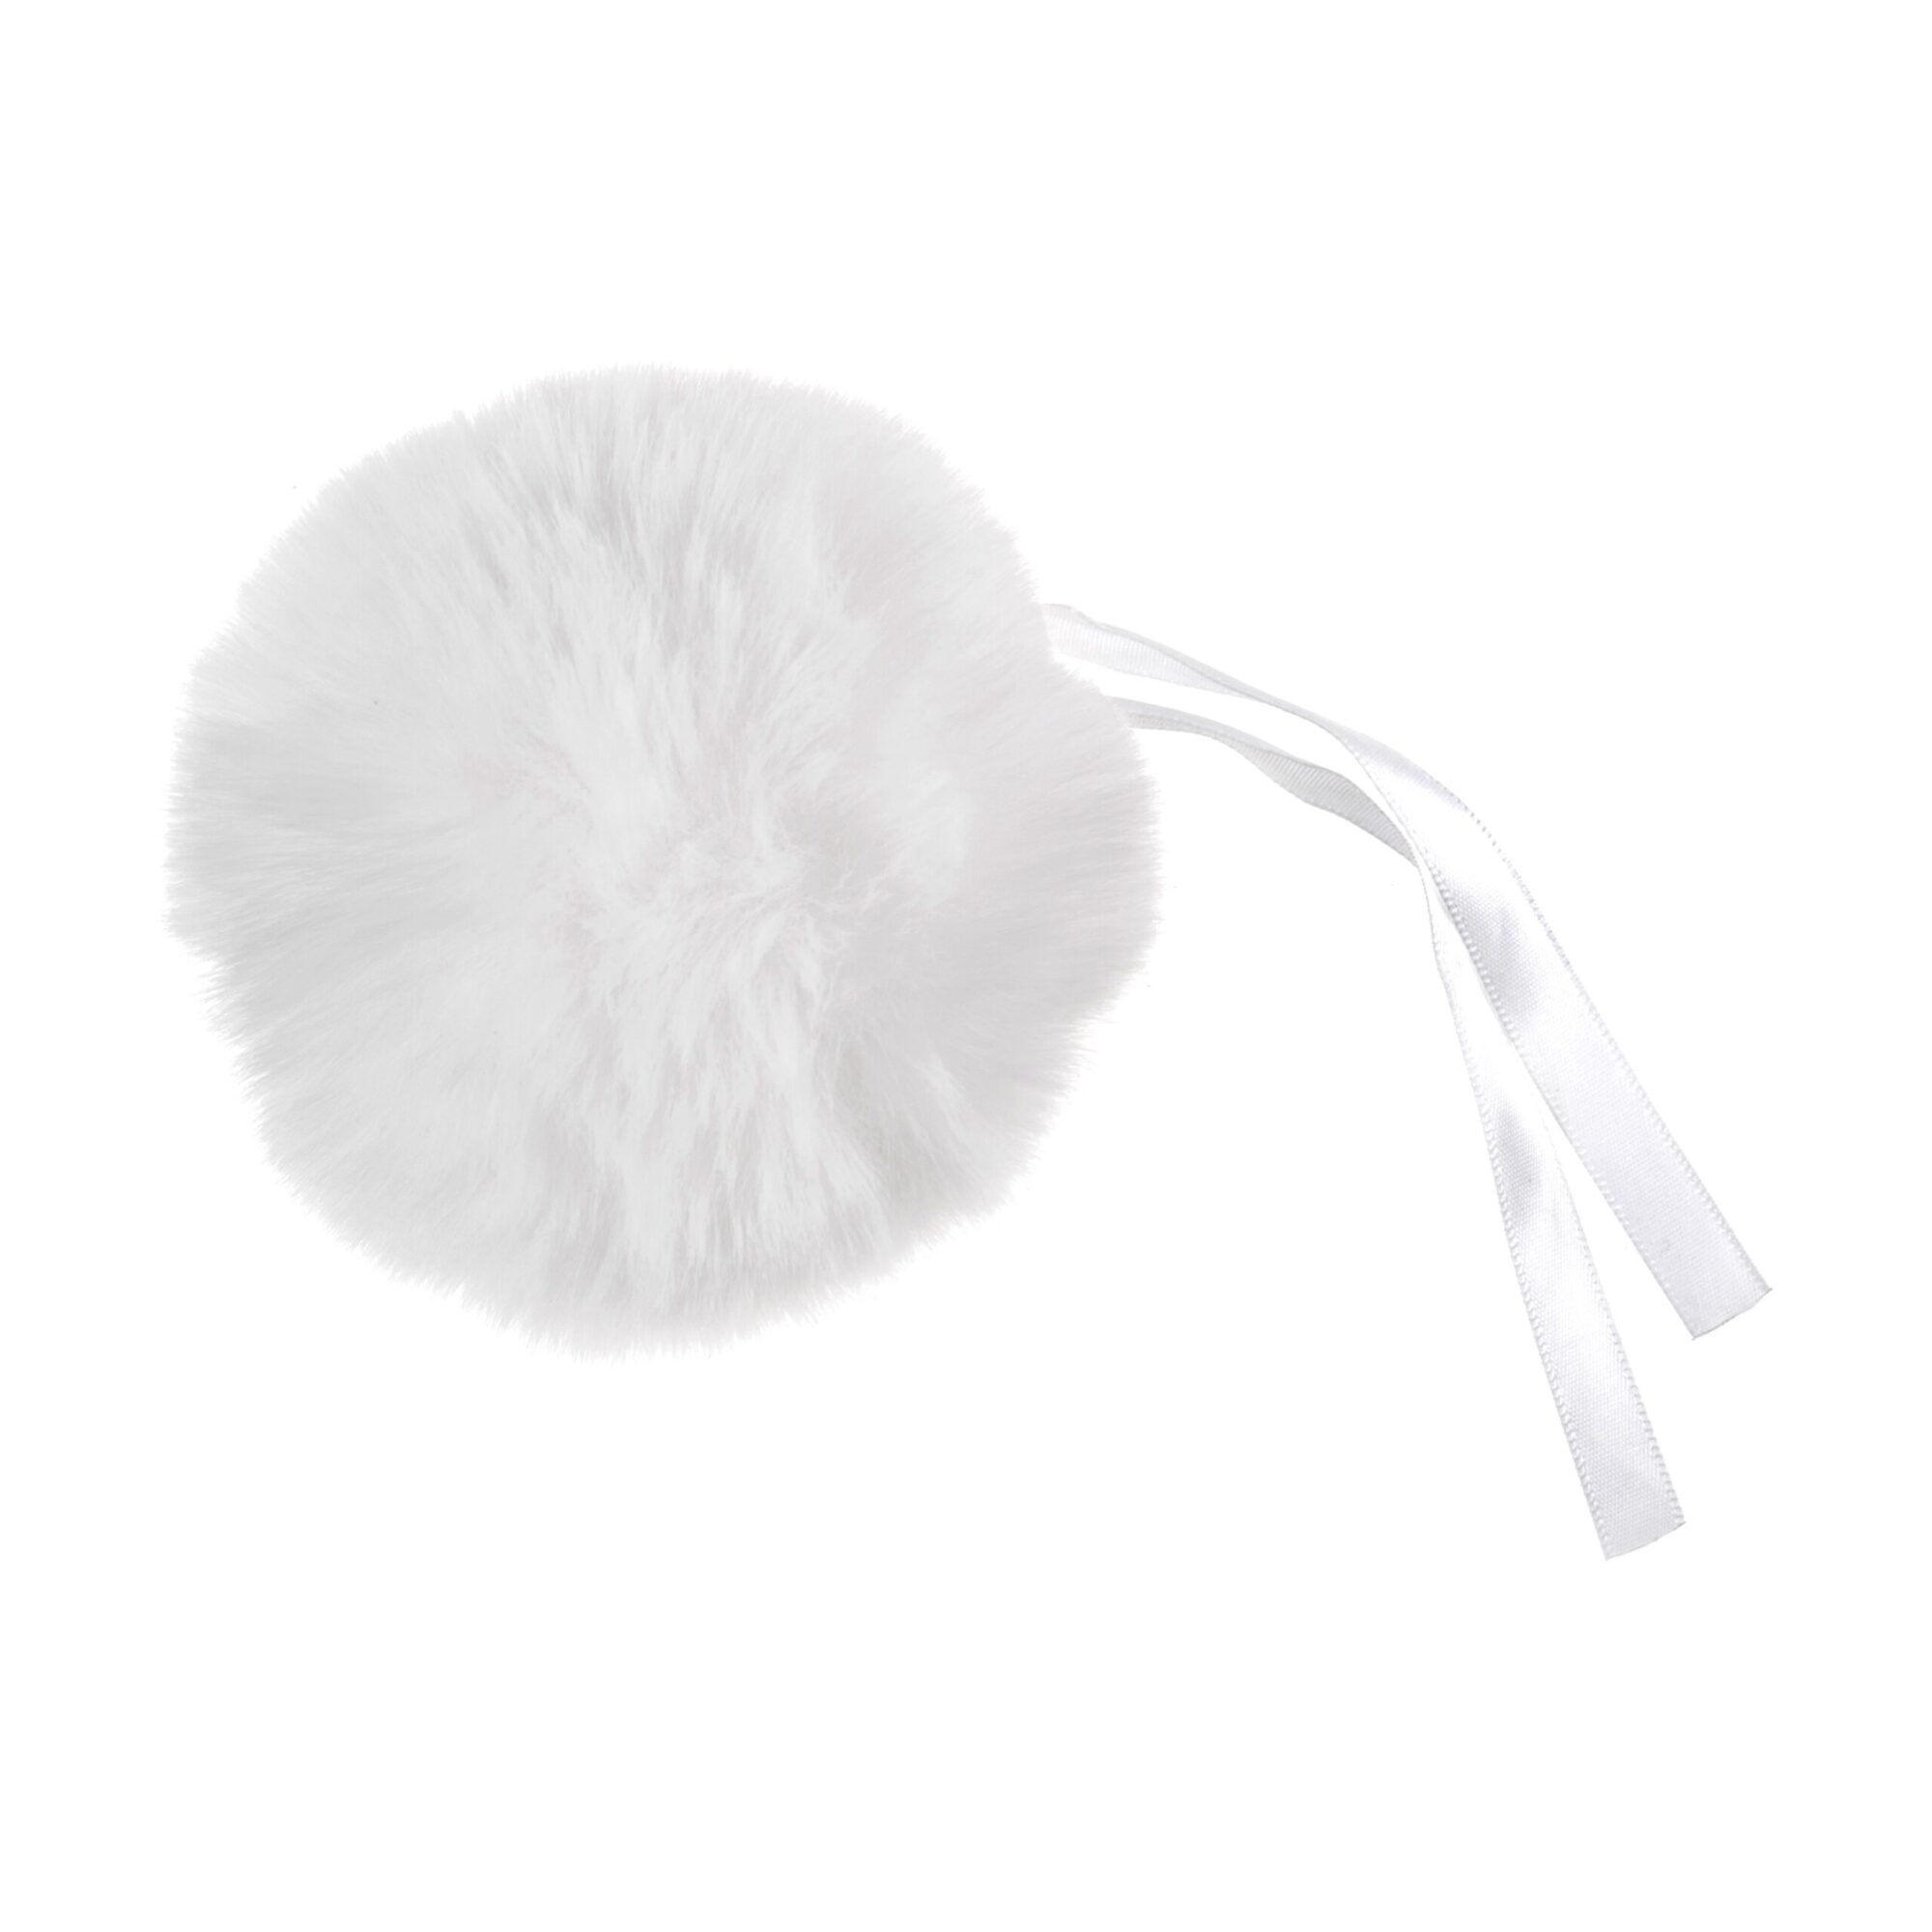 Large Faux Fur Pom Pom 11cm - White product image